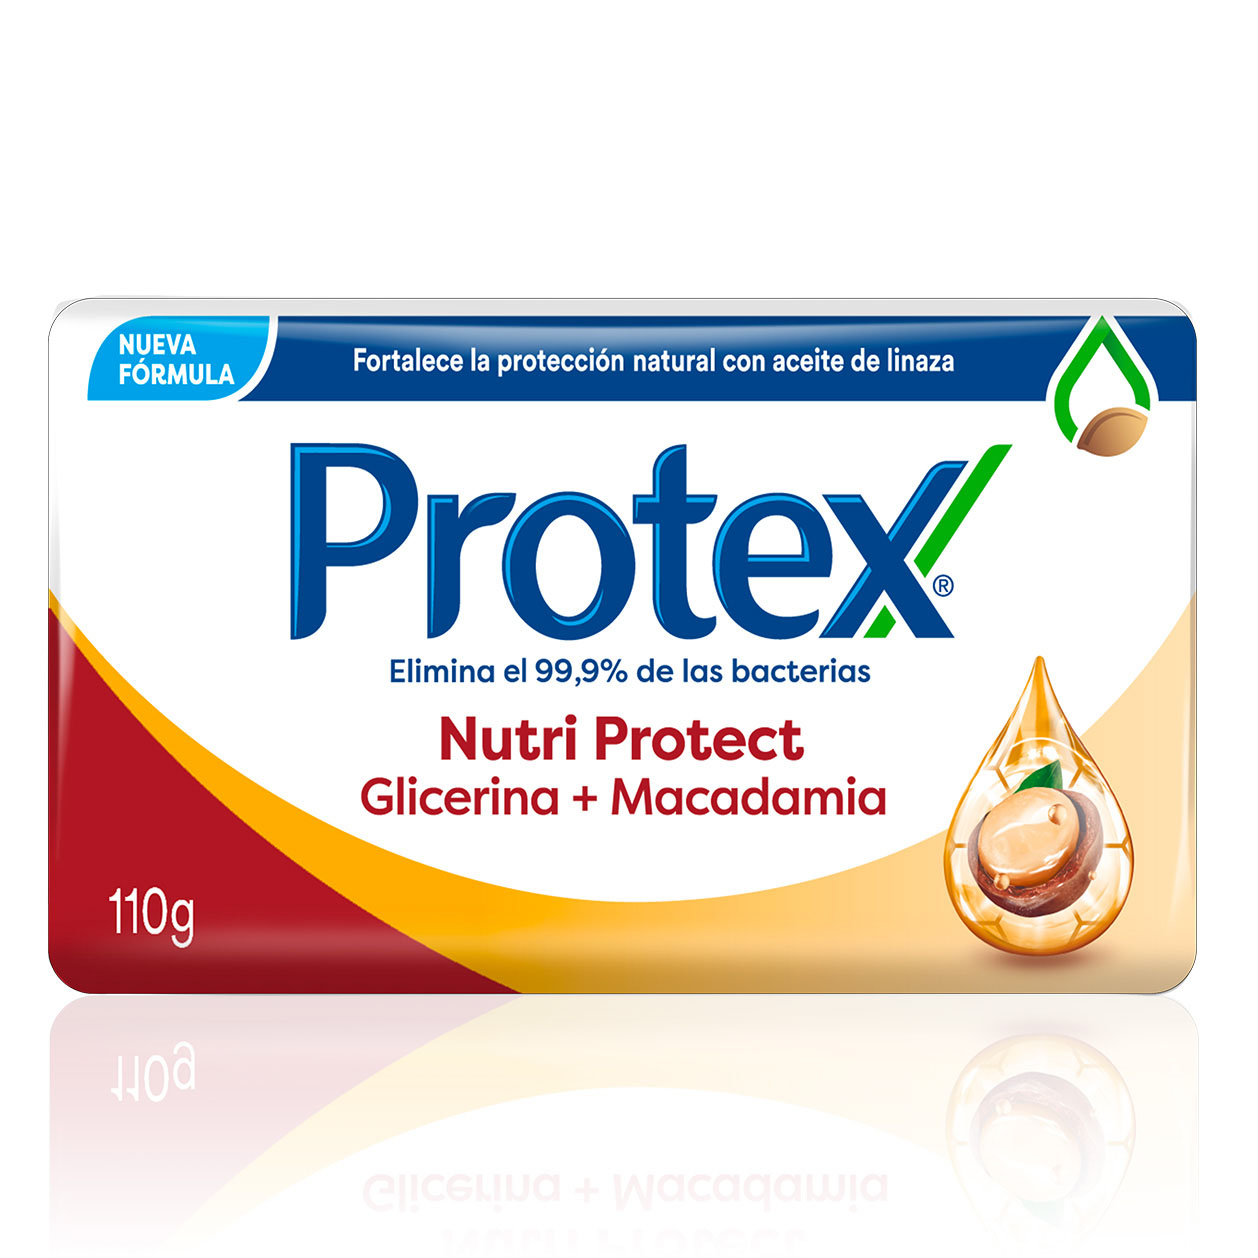 Jabón Protex Nutri Protect Macadamia + Glicerina